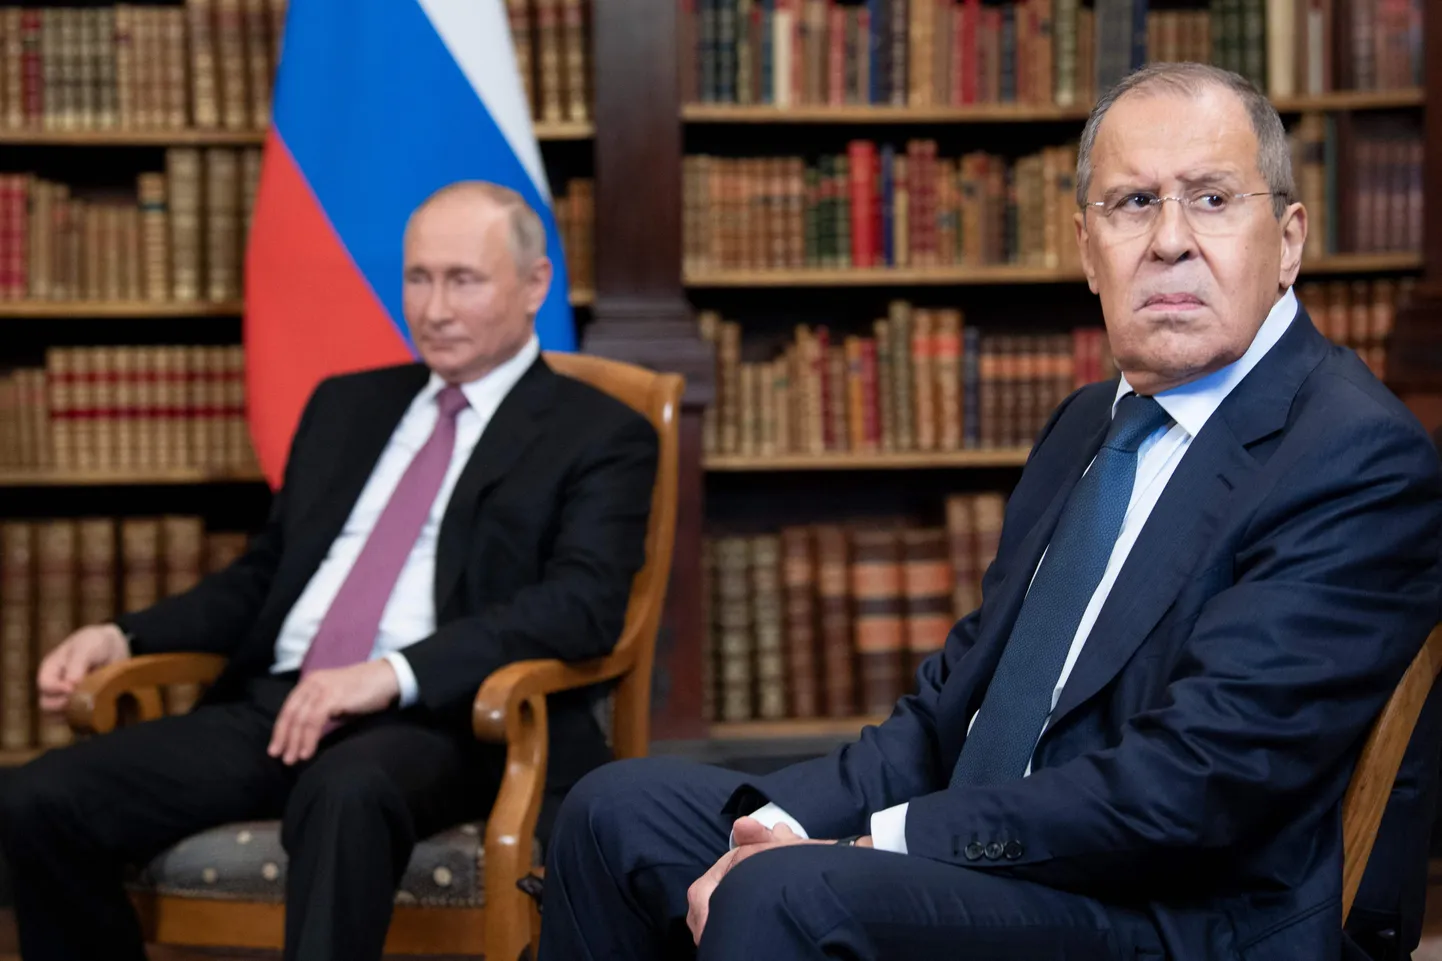 Venemaa välisminister Sergei Lavrov ütles, et ELi välisteenistus on nüüd «estoniseerunud».